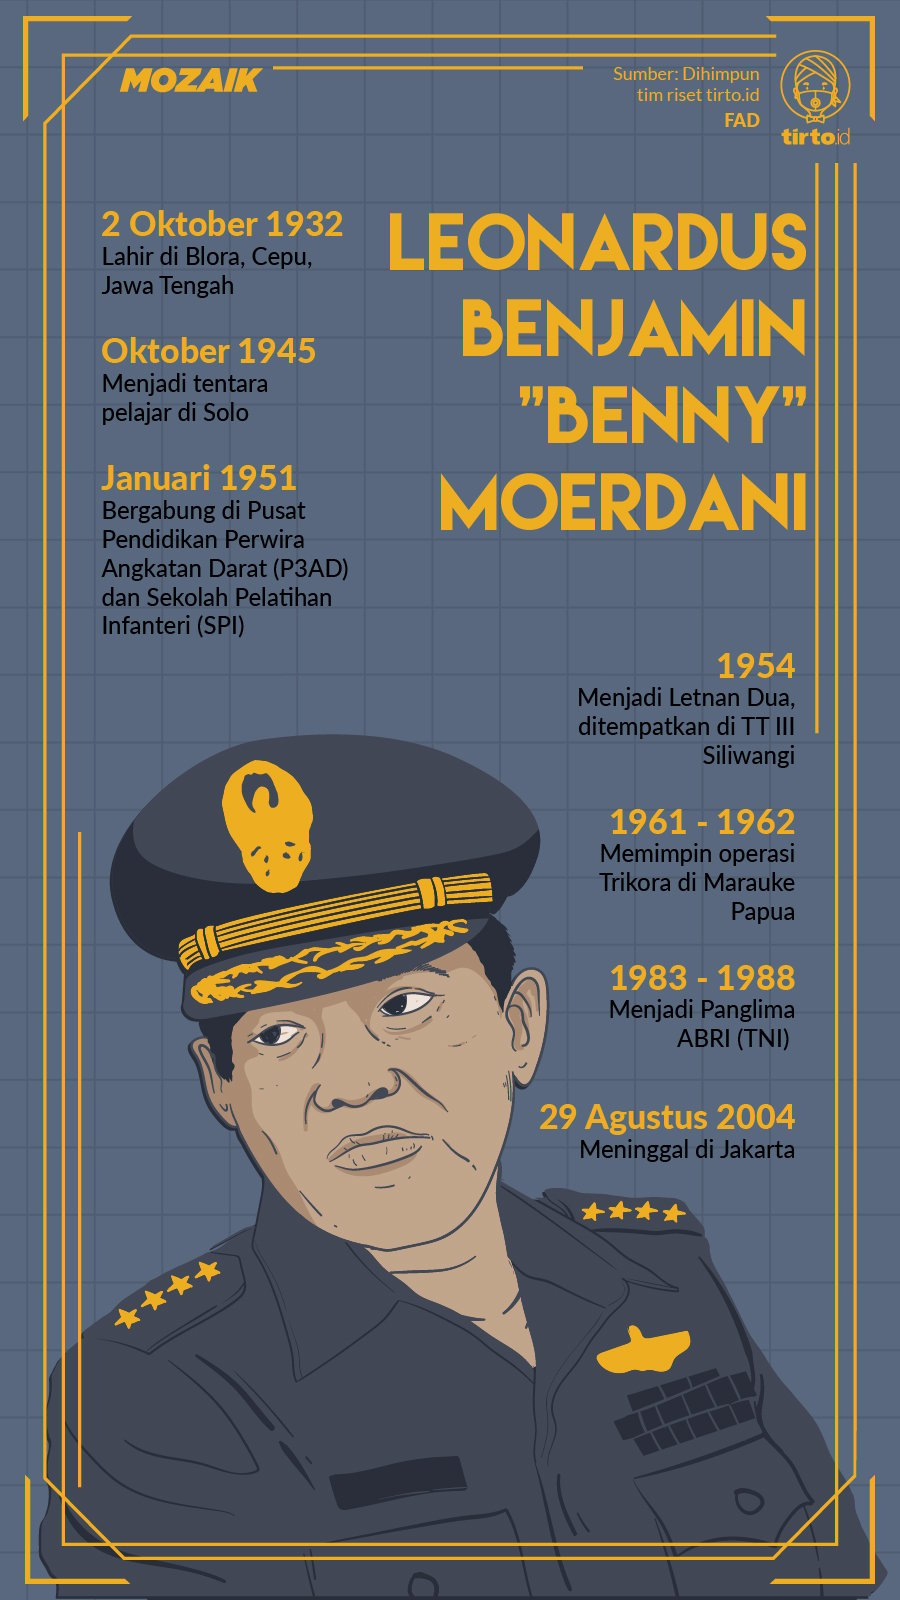 Infografik Mozaik Leonardus Benjamin Moerdani